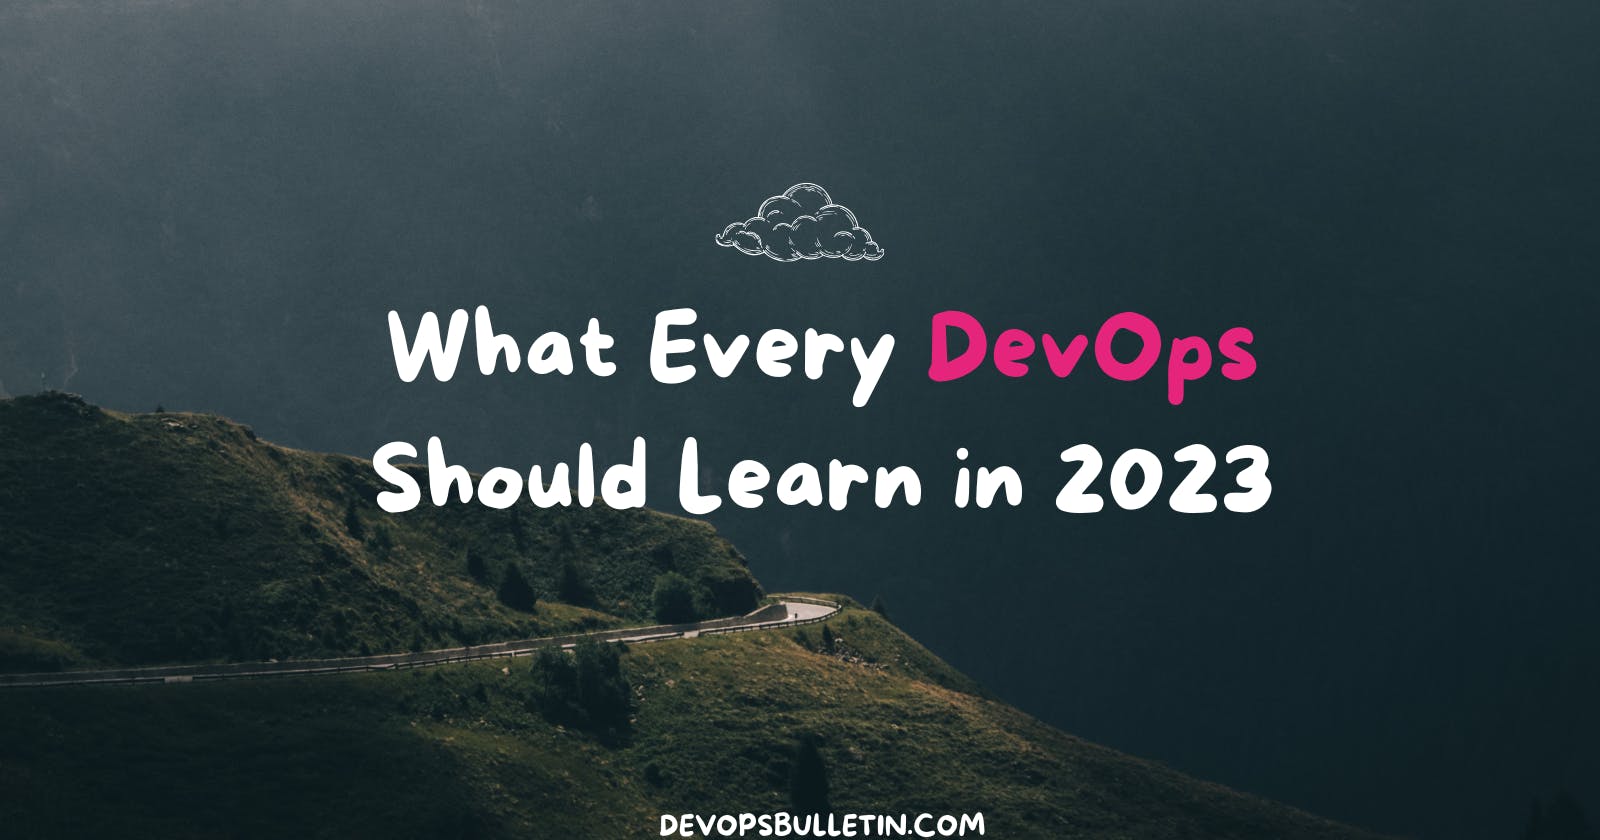 What Every DevOps Should Learn in 2023